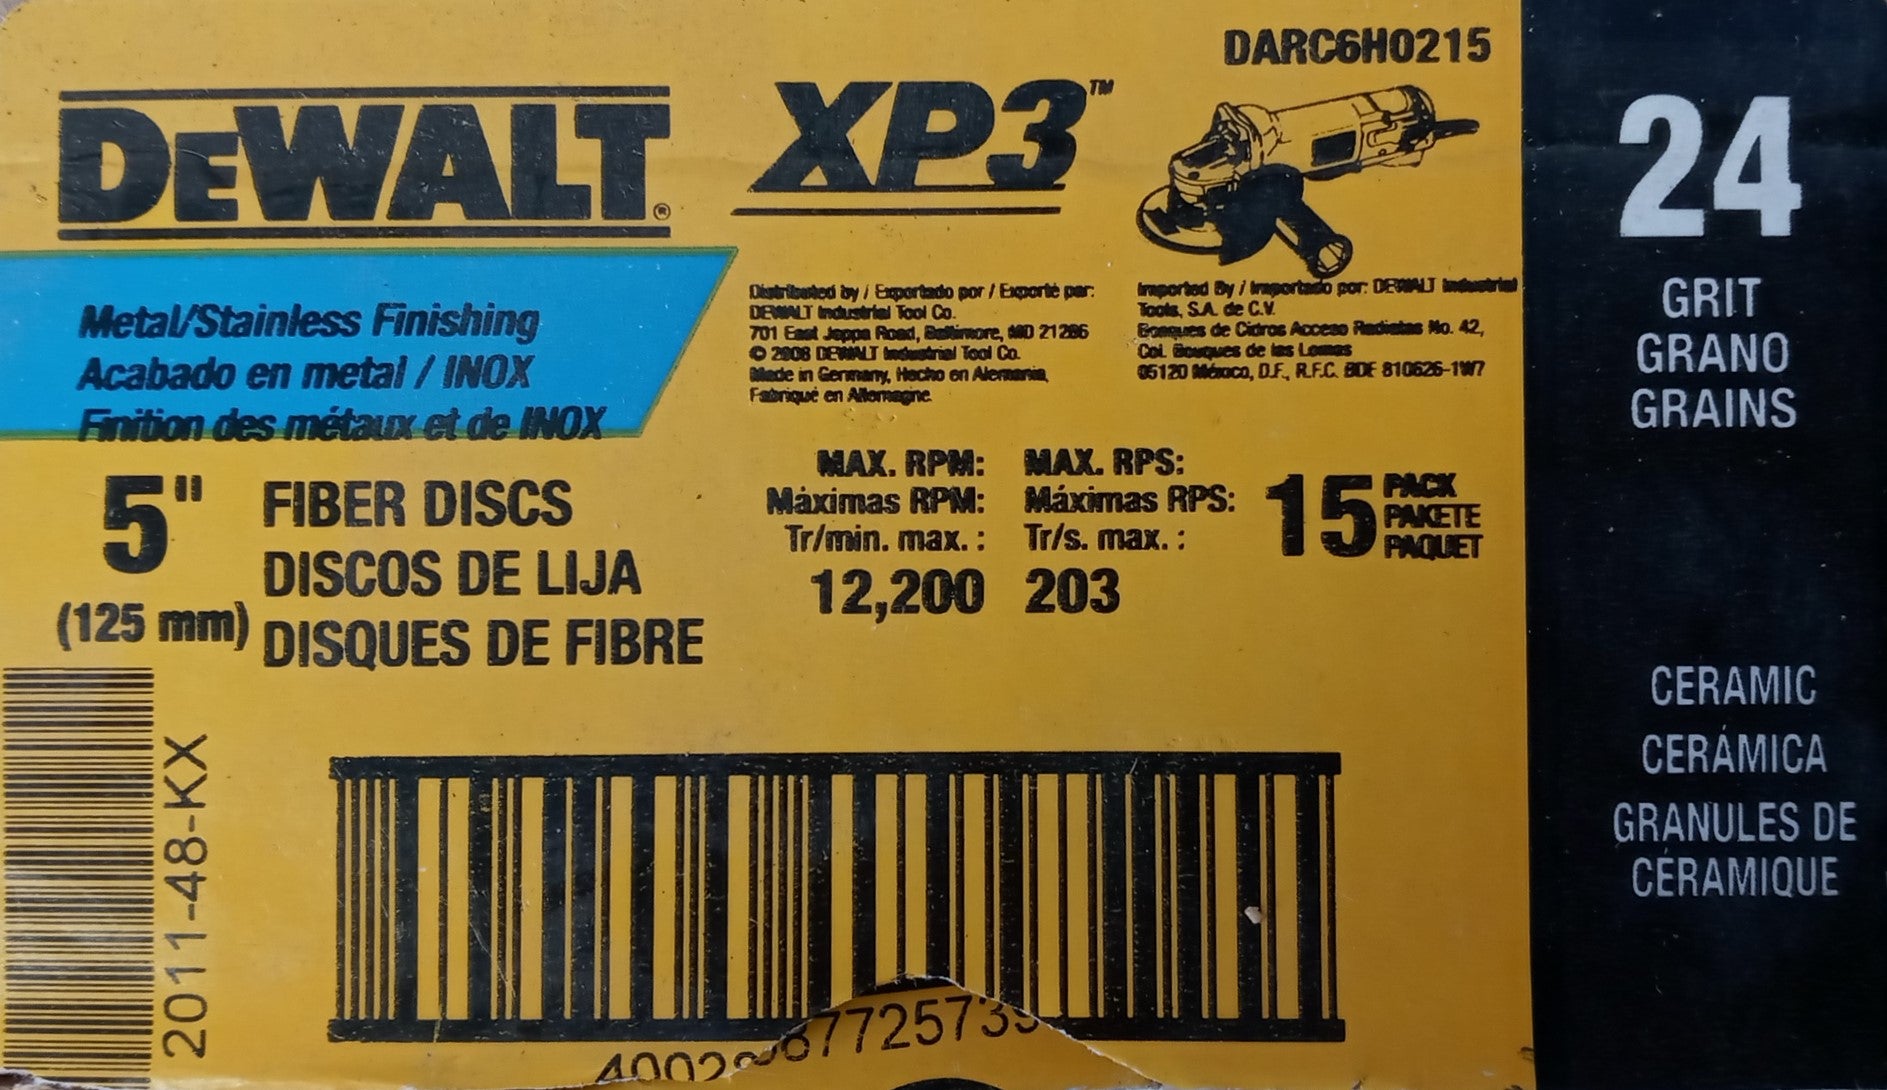 Dewalt DARC6H0215 Metal/Stainless Finishing Fiber Discs 24grit 5" 15-pack